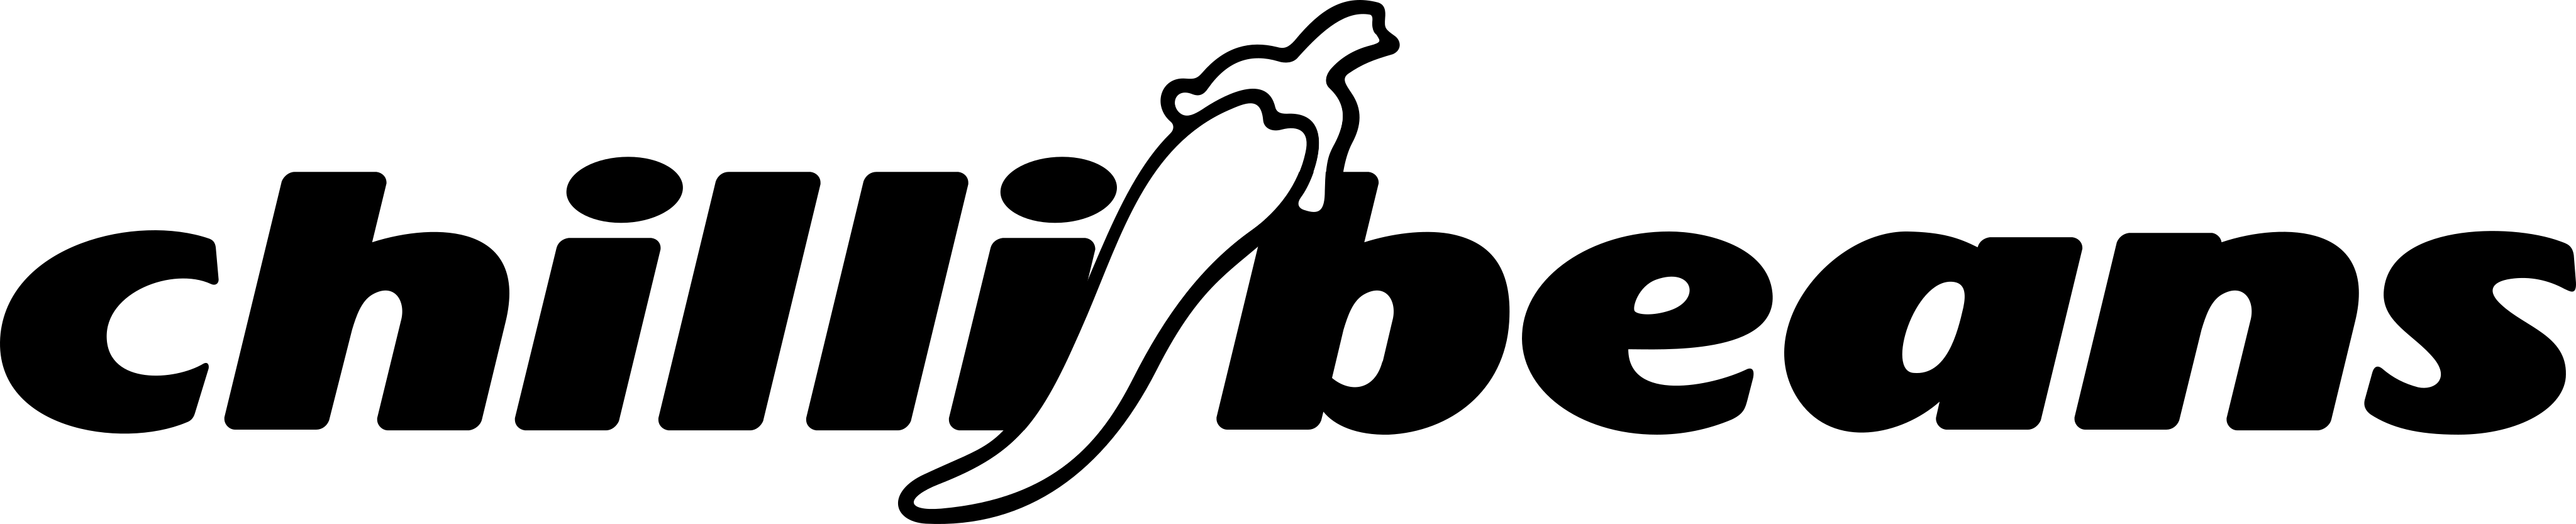 Colcci Logo - PNG e Vetor - Download de Logo